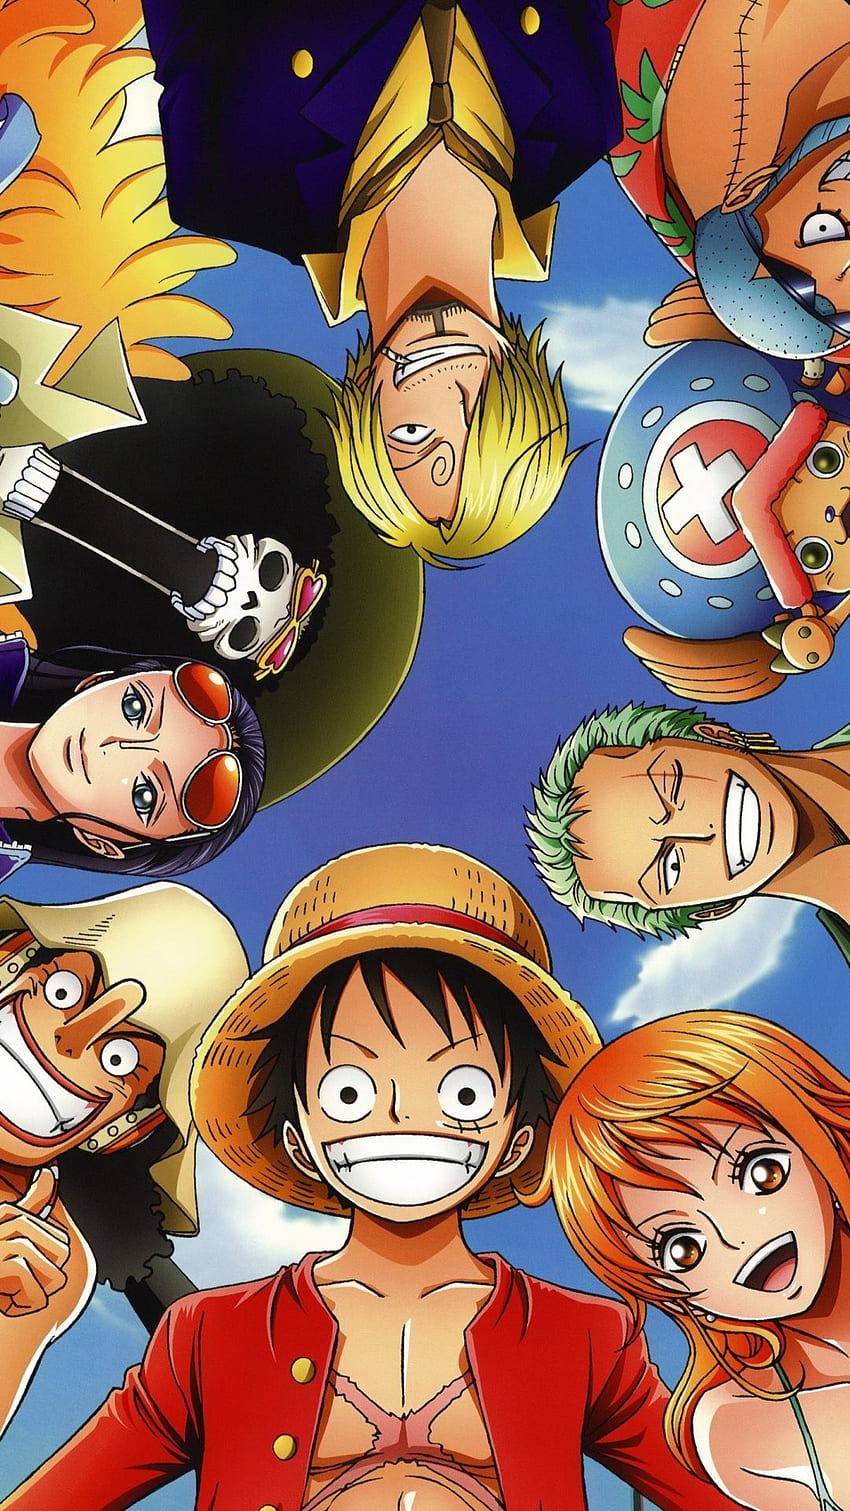 Bạn đang tìm kiếm một hình nền đẹp cho điện thoại của mình? Hãy để chúng tôi giới thiệu cho bạn hình nền One Piece HD hoàn hảo nhất! Với độ phân giải cao, hình ảnh sắc nét, bạn sẽ không thể rời mắt khỏi điện thoại mình khi đã đặt giữa nền One Piece HD đầy hấp dẫn này.